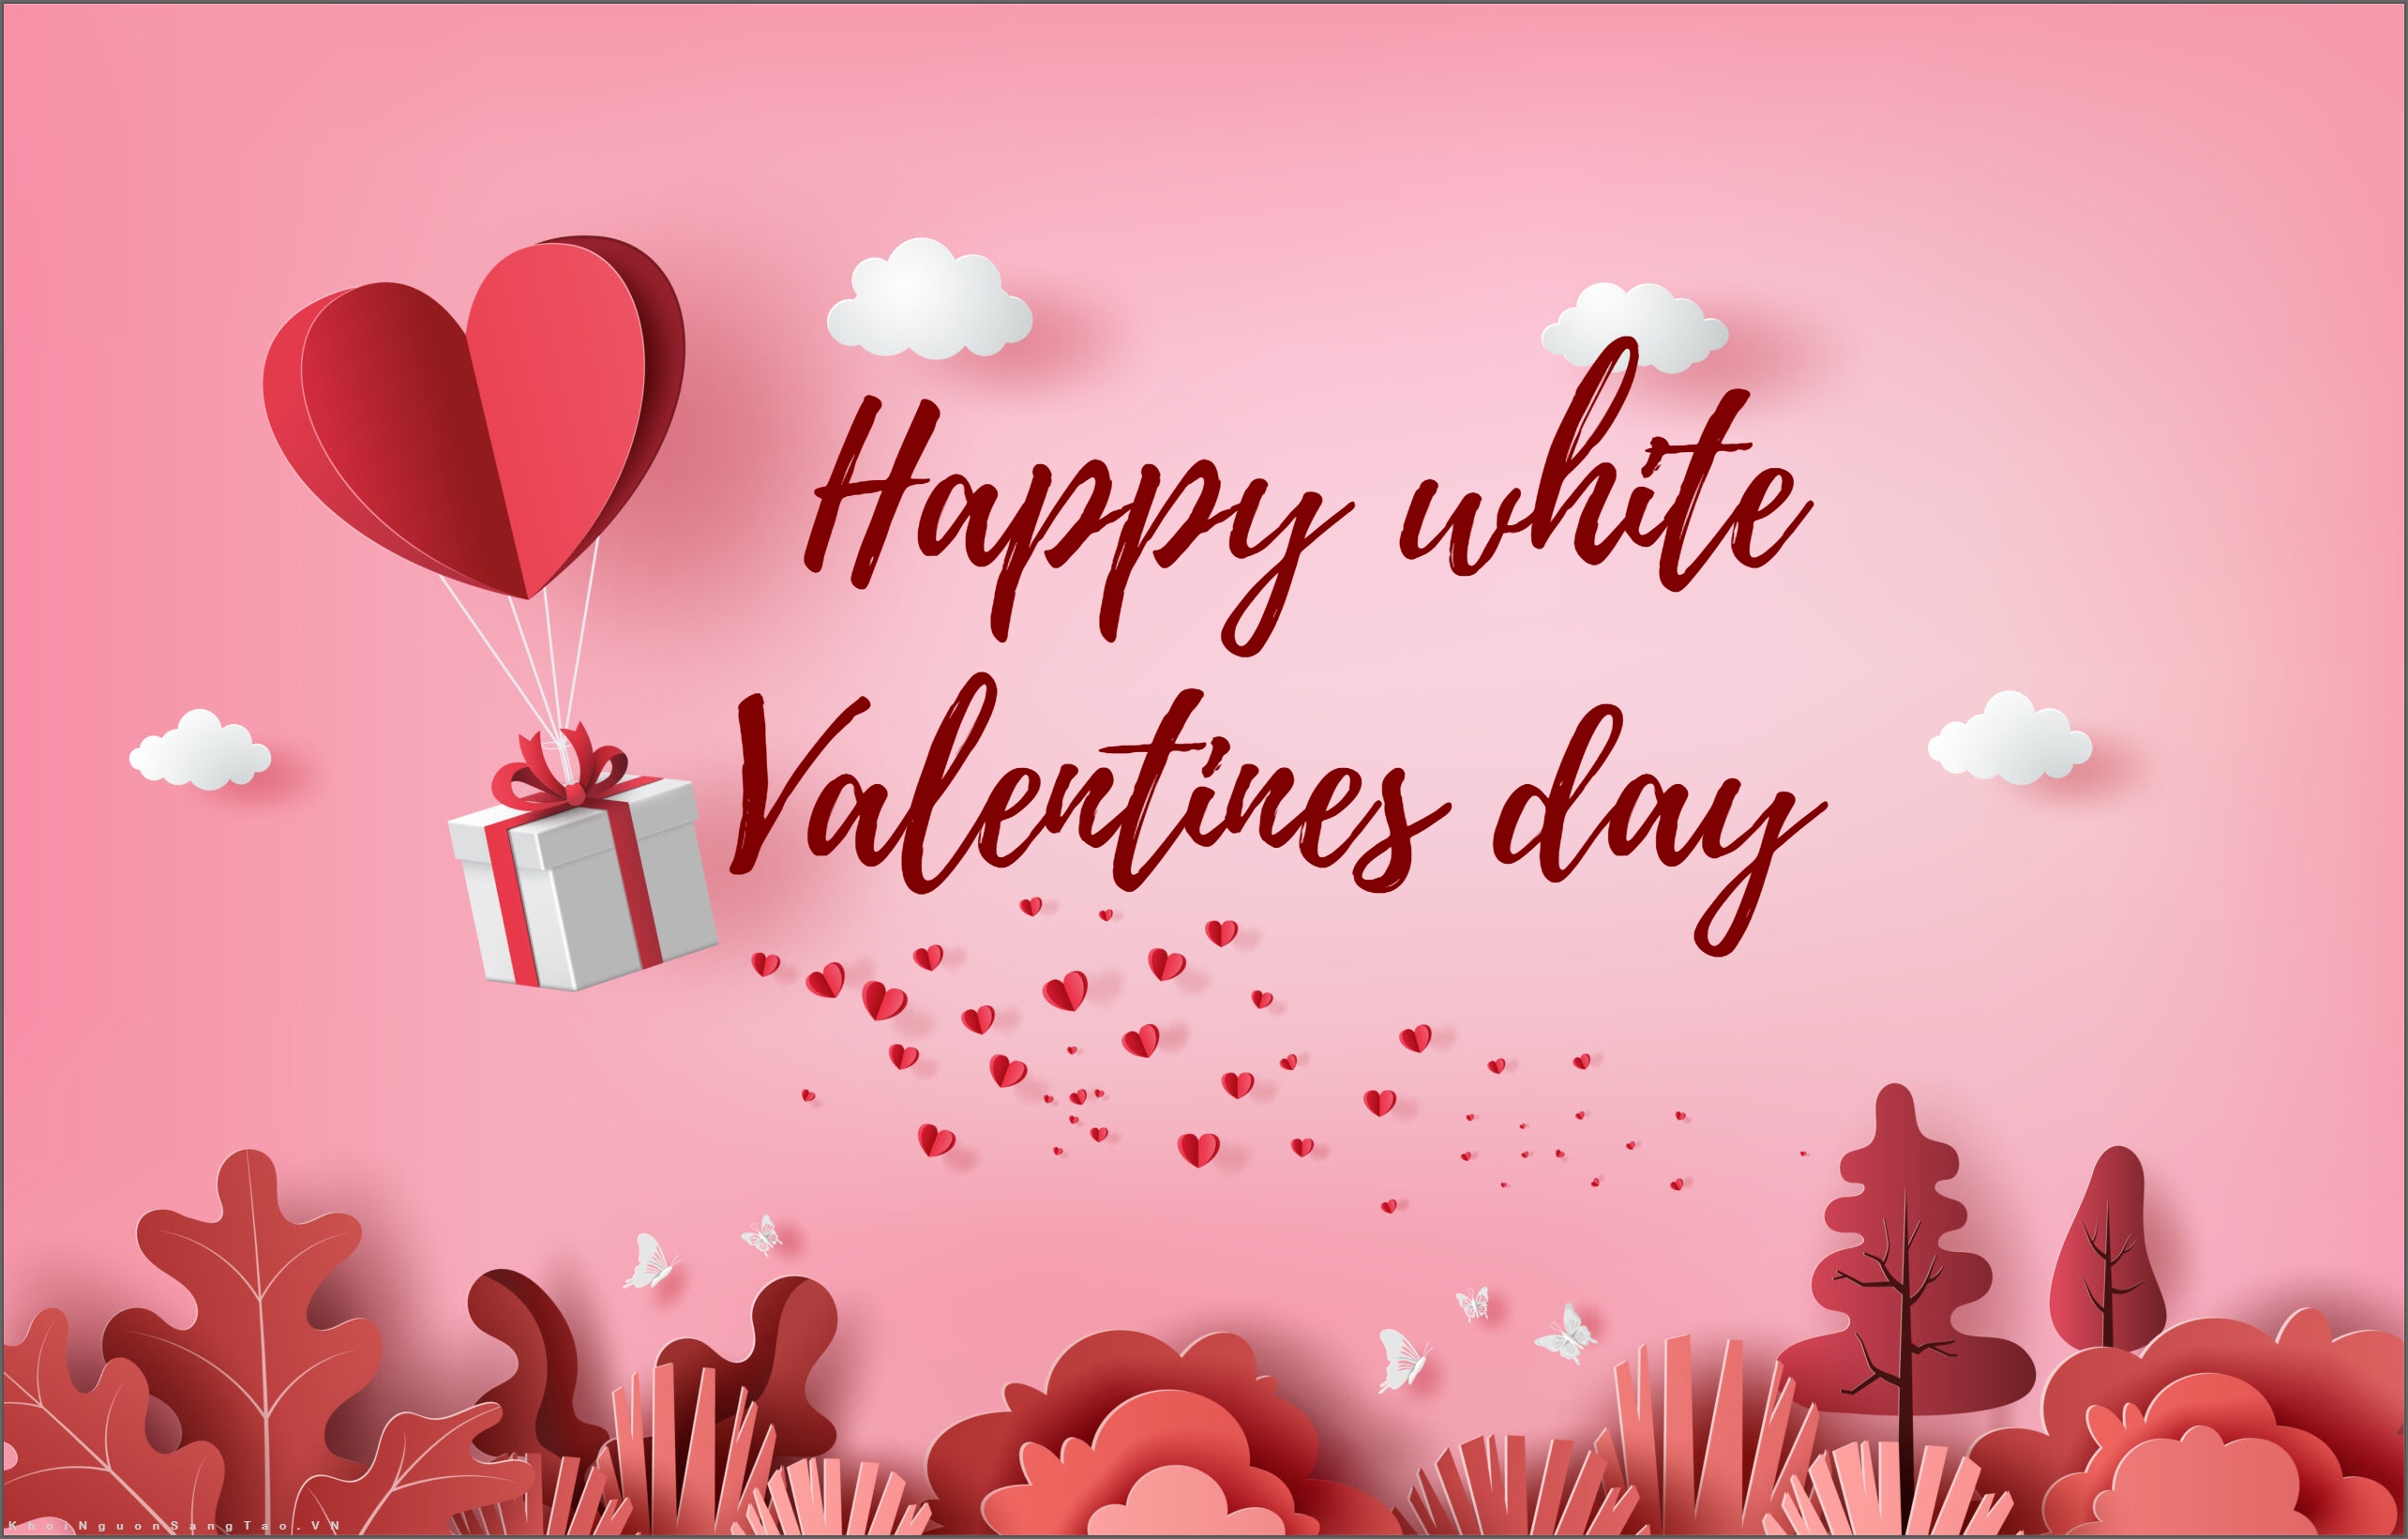 Ngày Valentine Trắng chính là dịp để chúng ta thể hiện tình cảm đặc biệt đối với người mình yêu thương. Hãy cùng chúng tôi đón chào ngày này và tìm hiểu về ý nghĩa của Valentine trắng qua hình ảnh đẹp đến không ngờ.